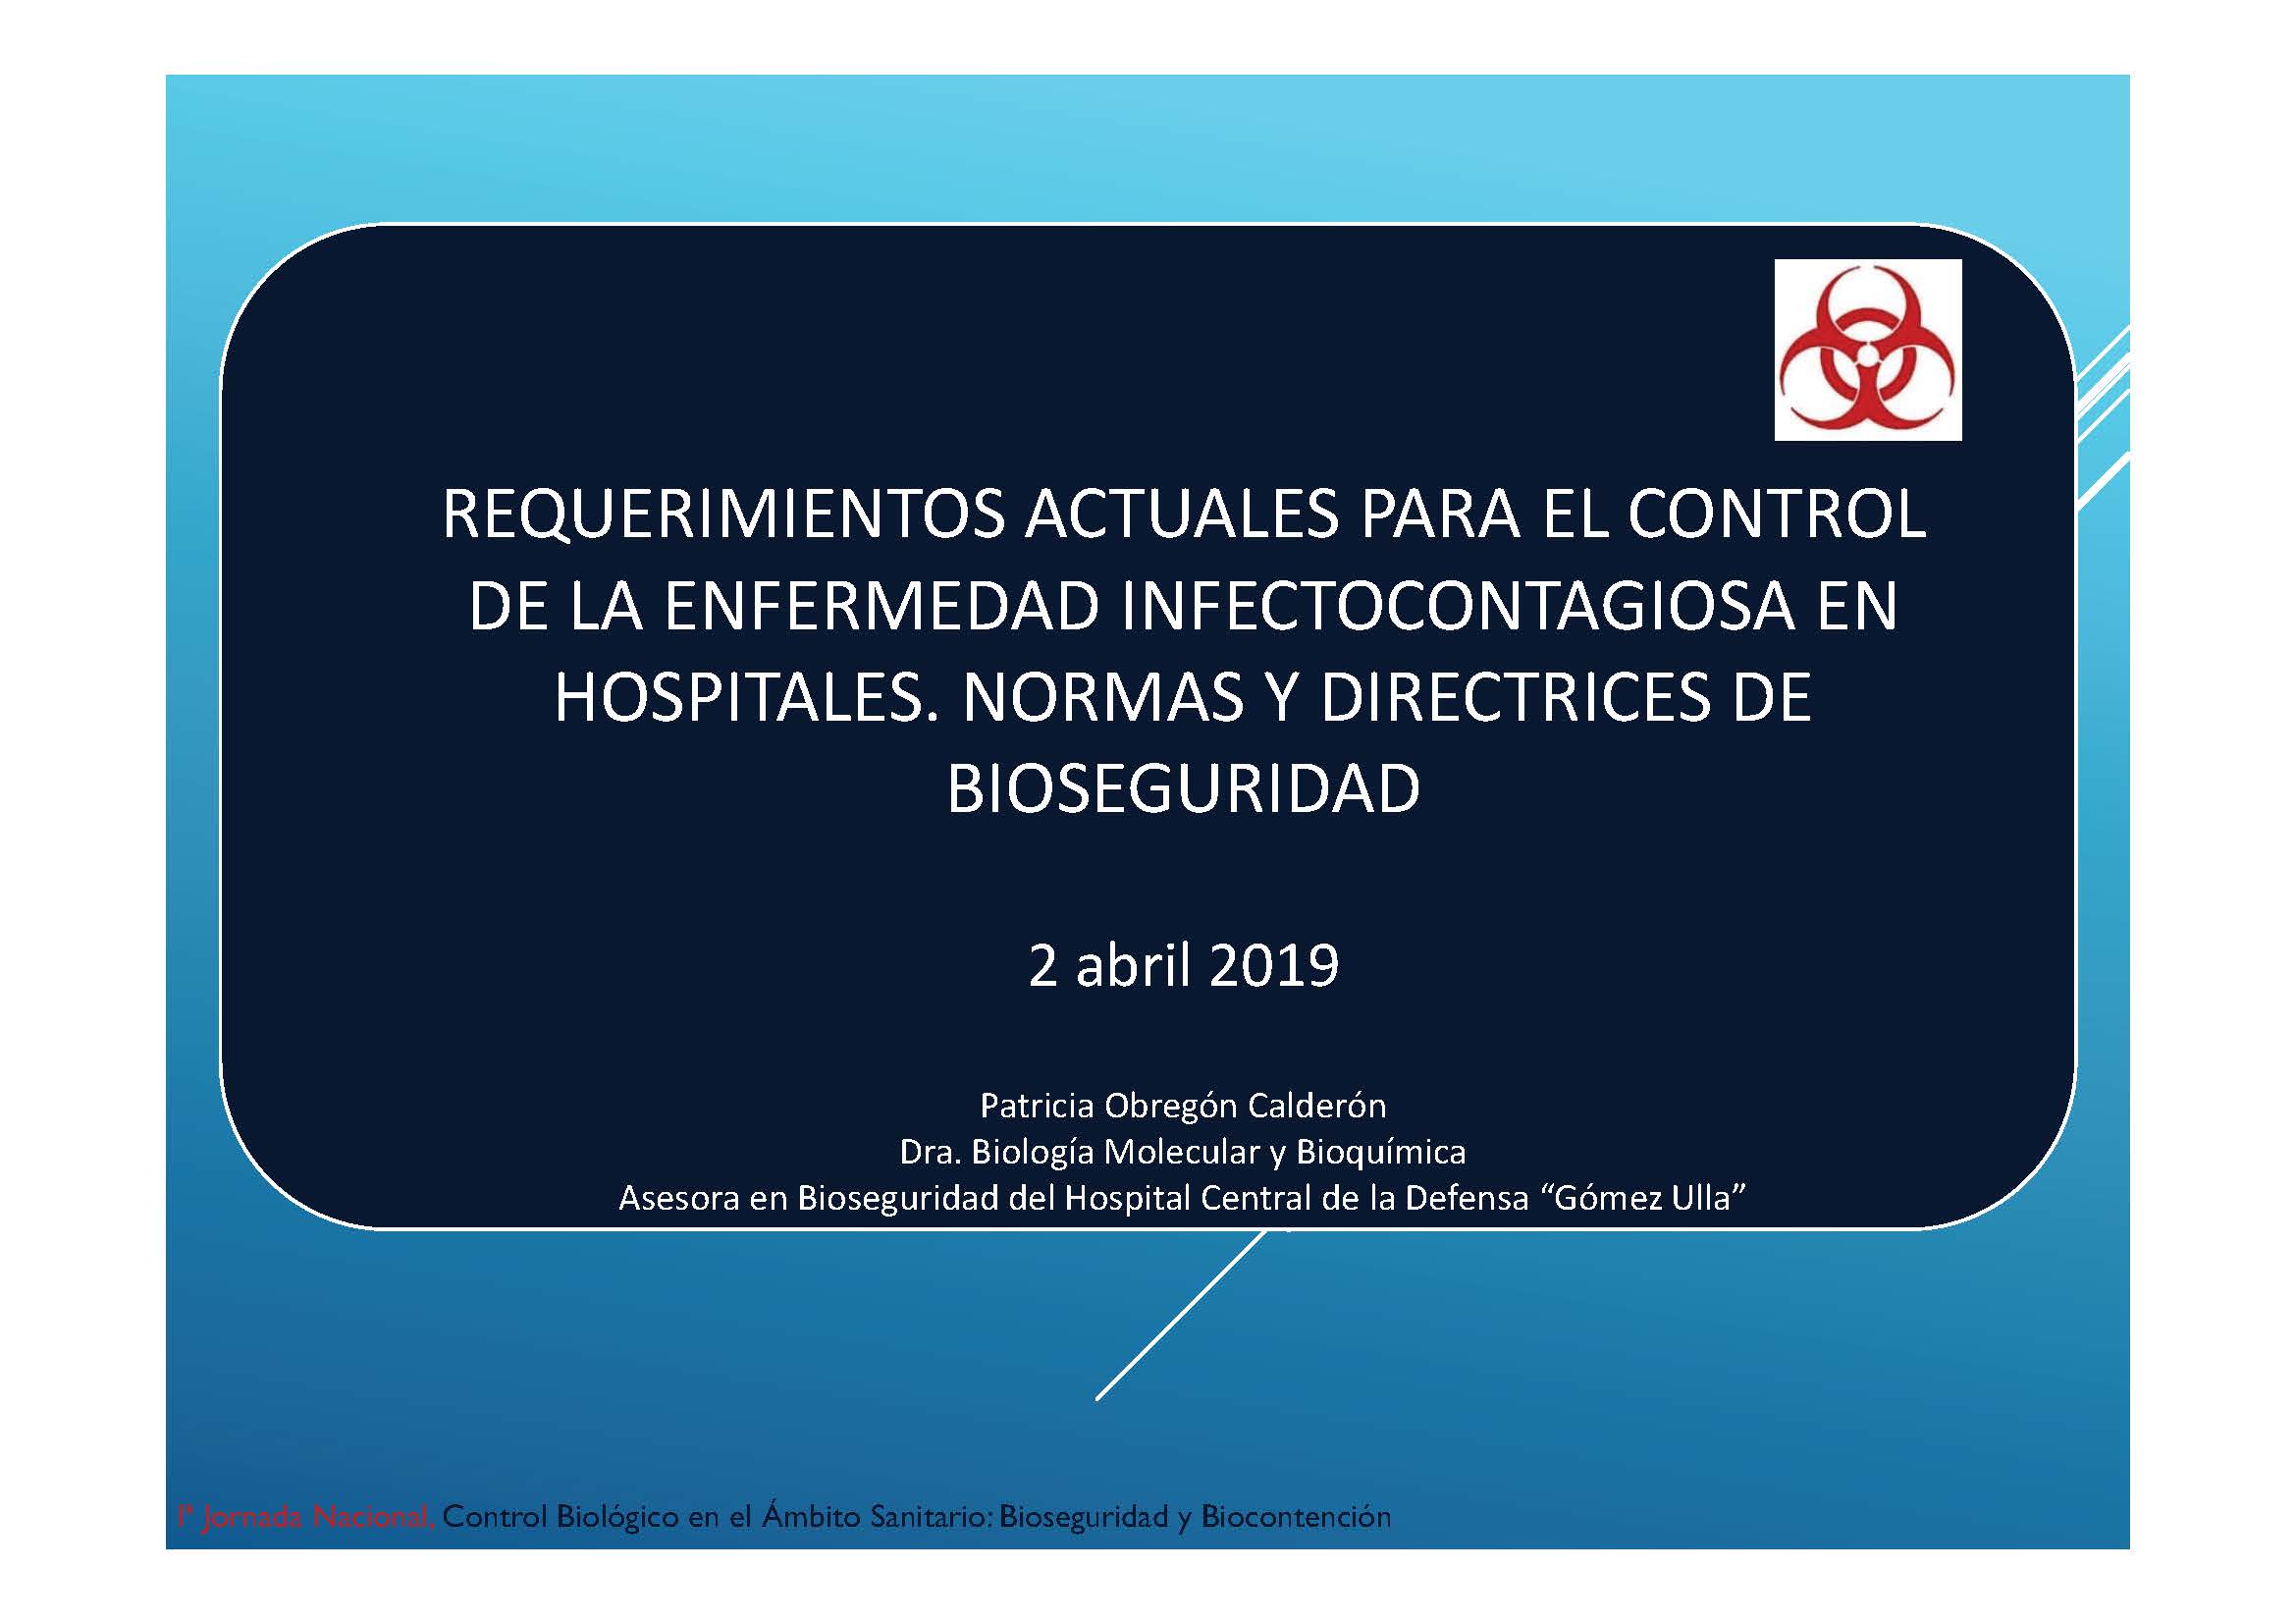 //aebios.org/wp-content/uploads/2020/08/Portada-Normas-y-Directrices-de-Bioseguridad-en-Ámbito-Sanitario.jpg